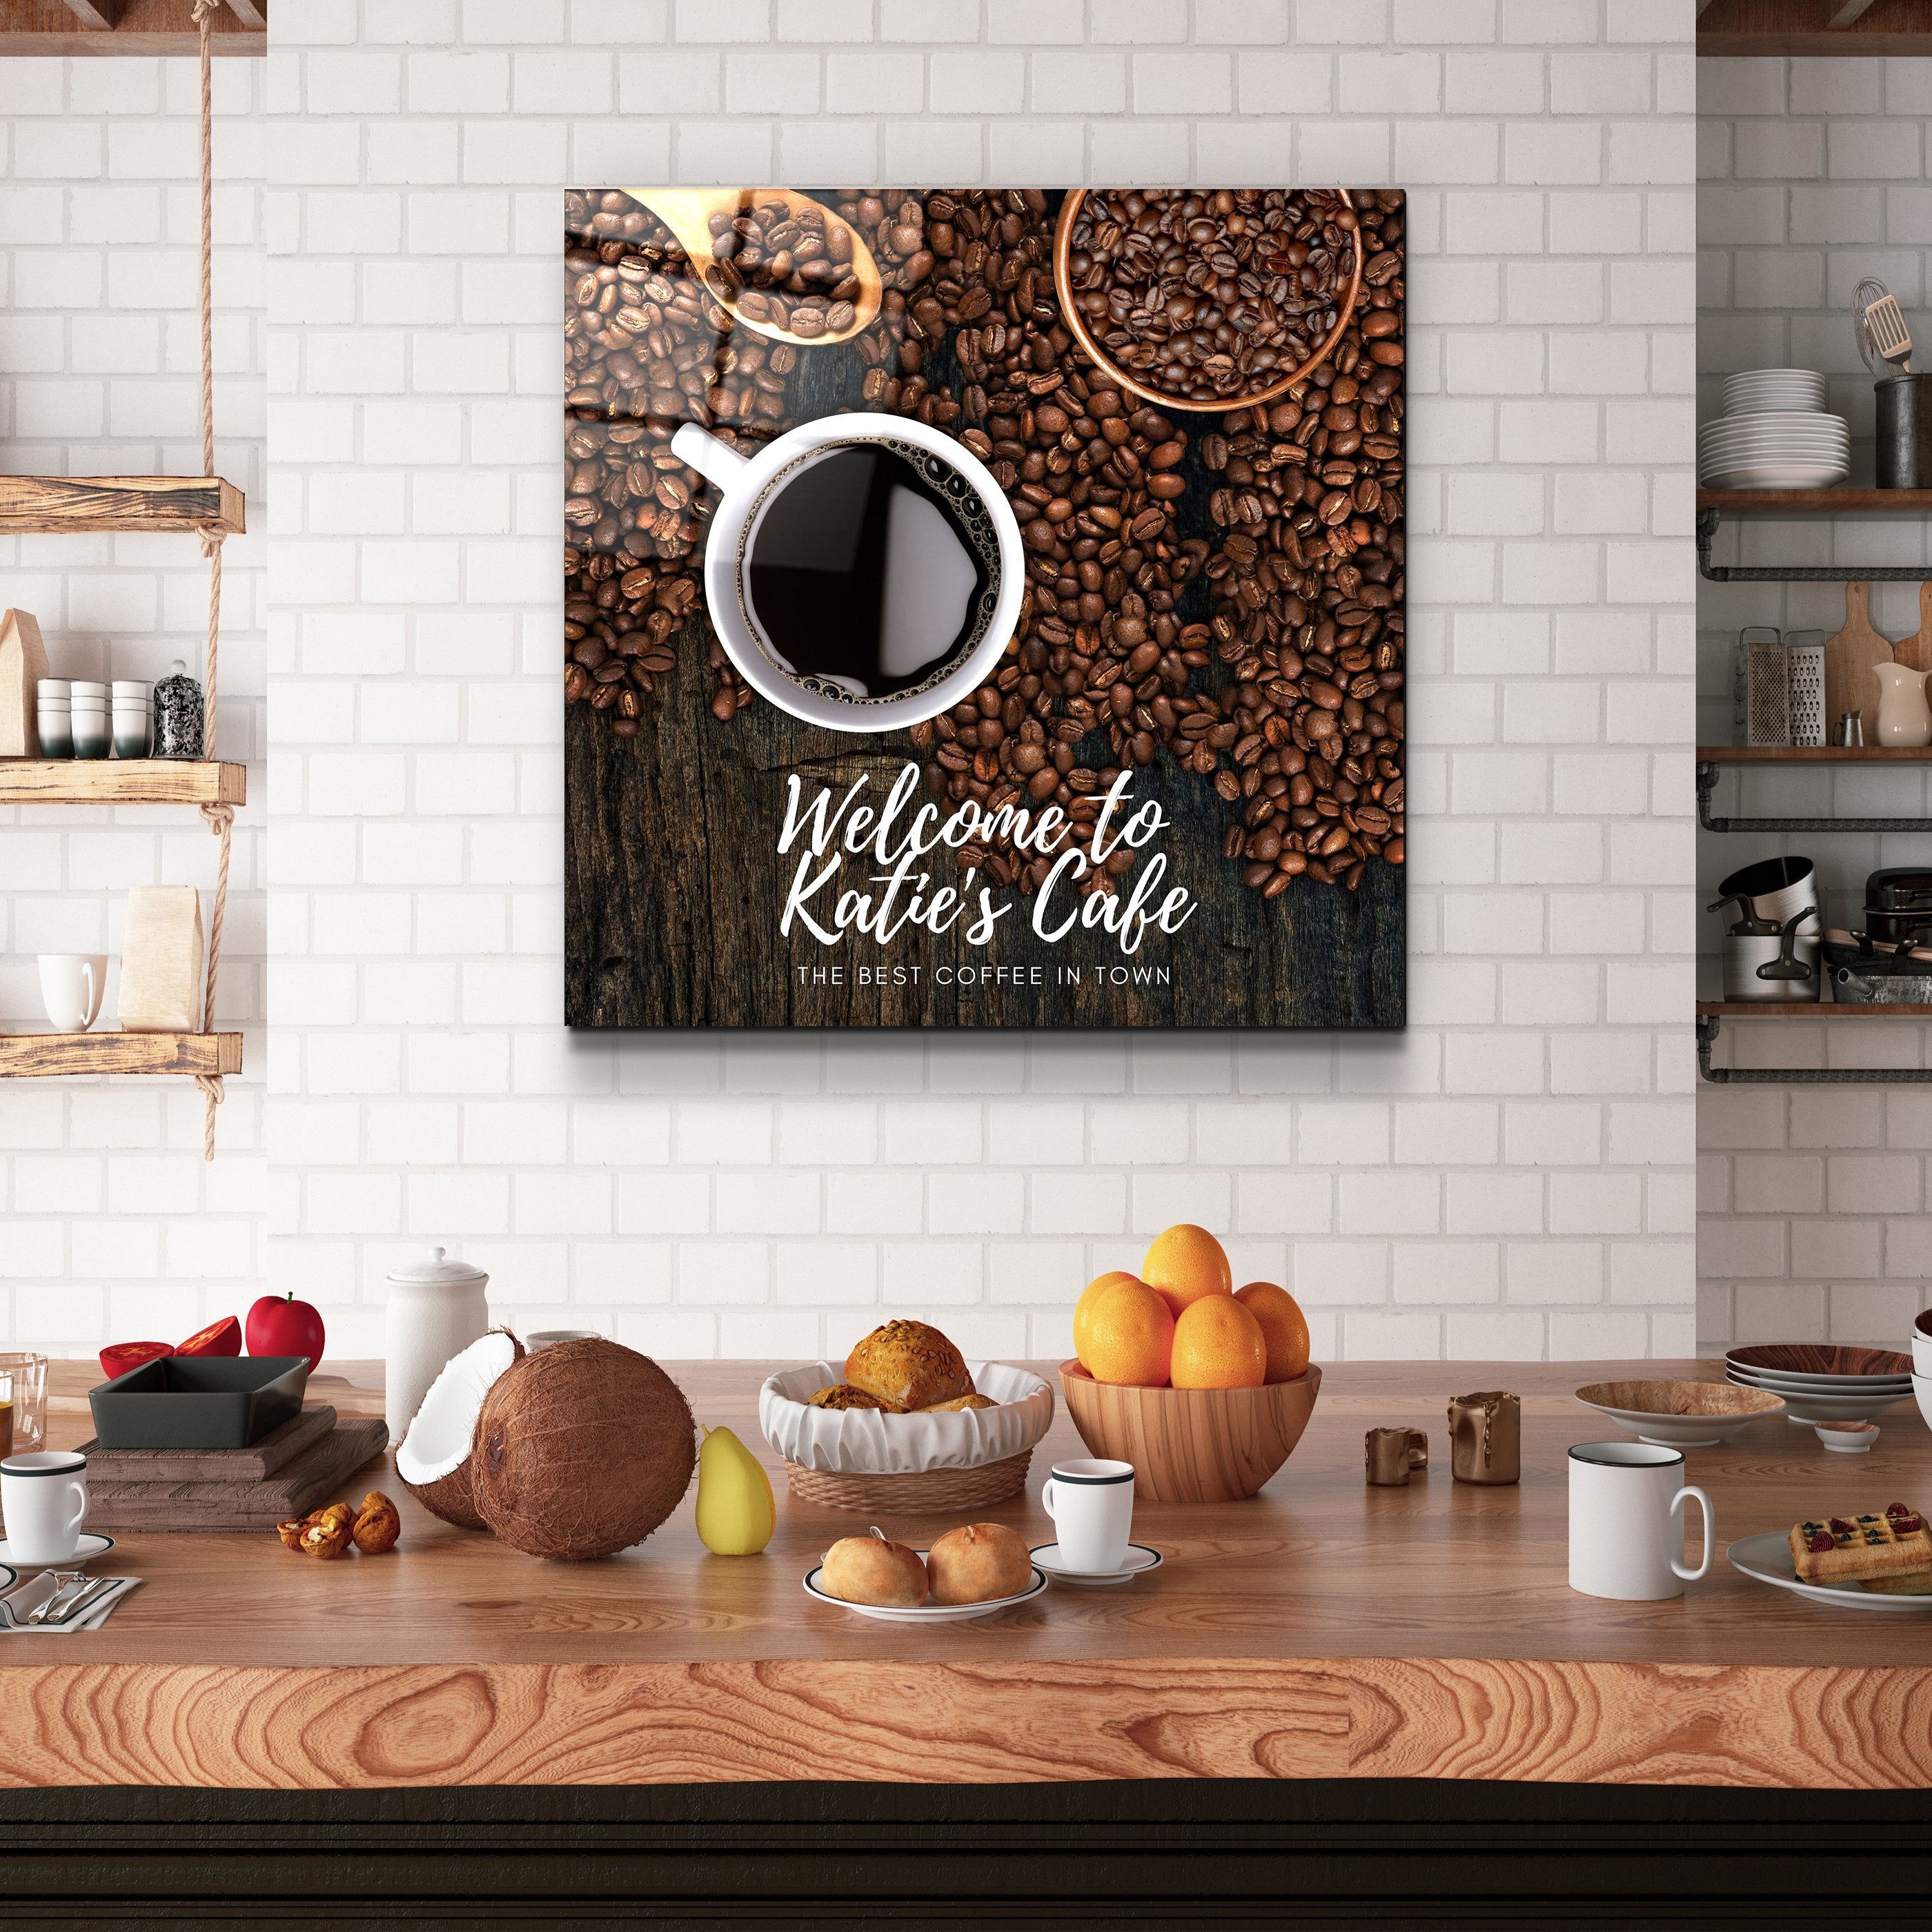 . "Impression personnalisée". Votre café - Art mural en verre de cuisine